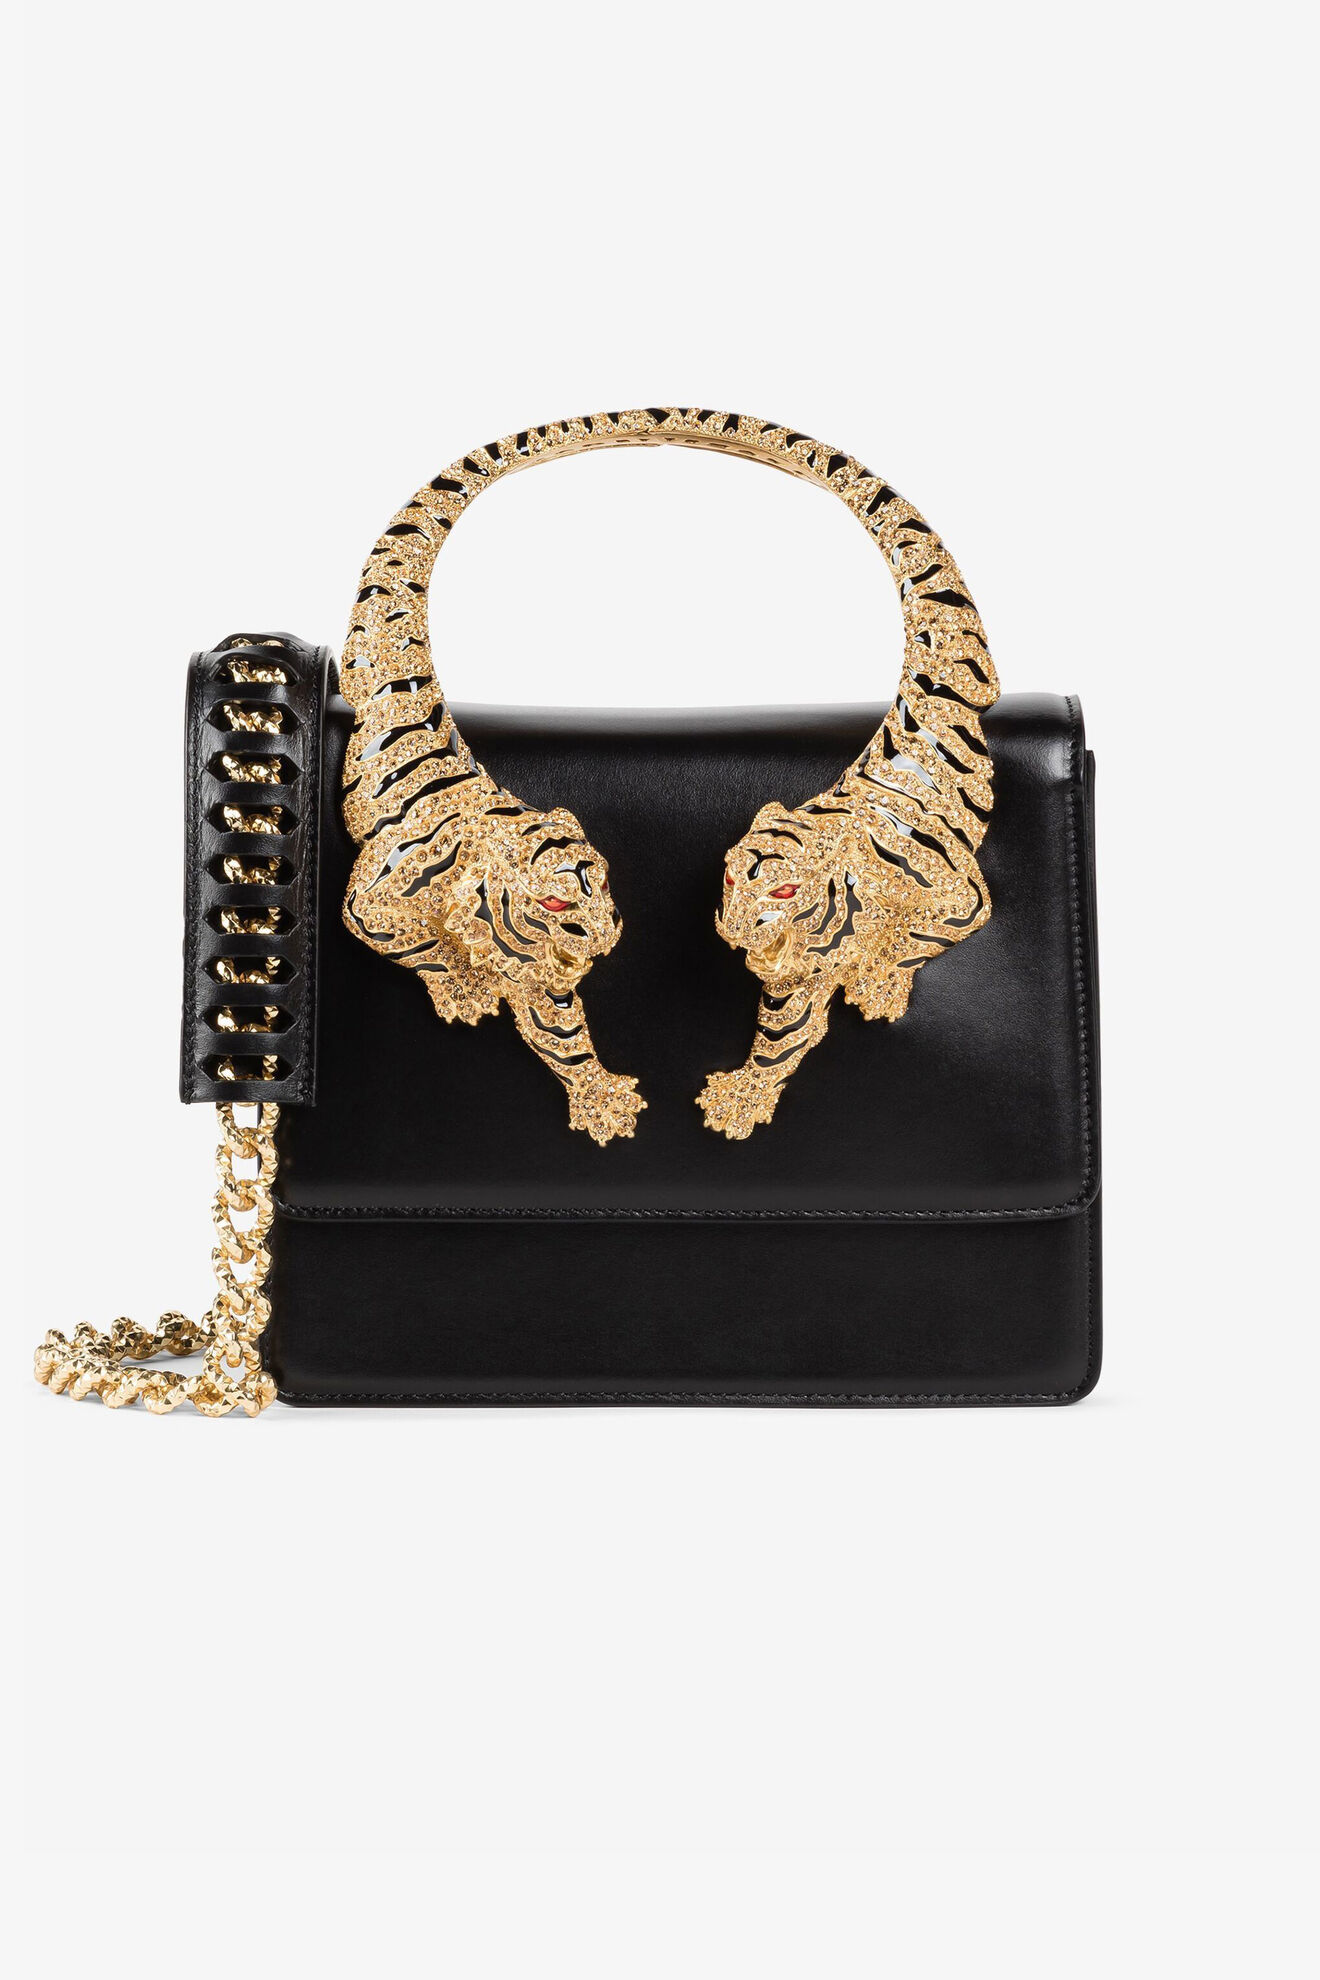 Dolce & Gabbana Devotion Crystal Embellished Snakeskin Shoulder Bag